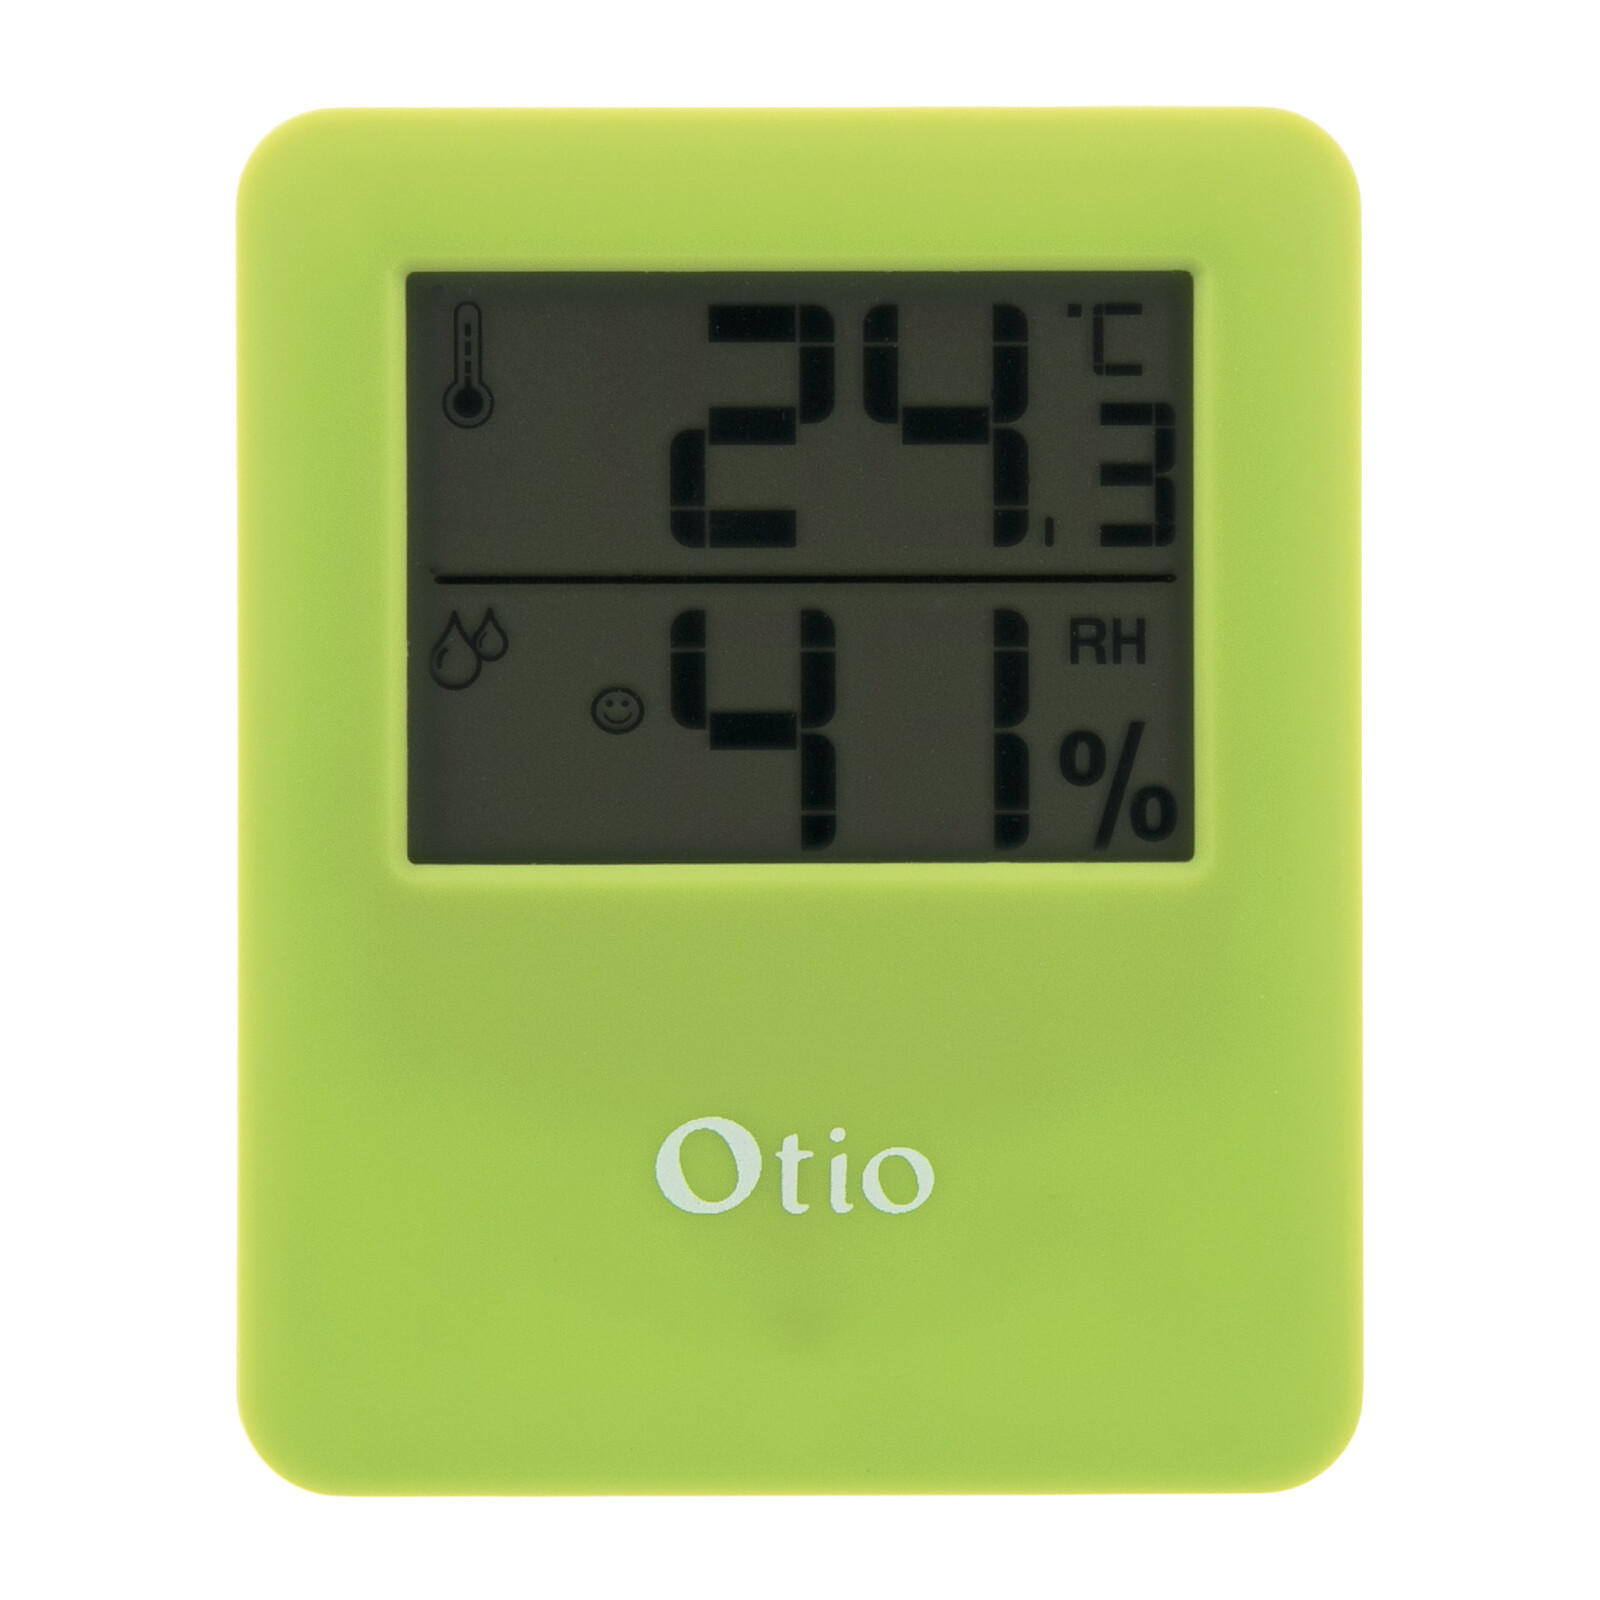 Thermomètre / Hygromètre intérieur magnétique - Vert - Otio - Station Météo  - LDLC